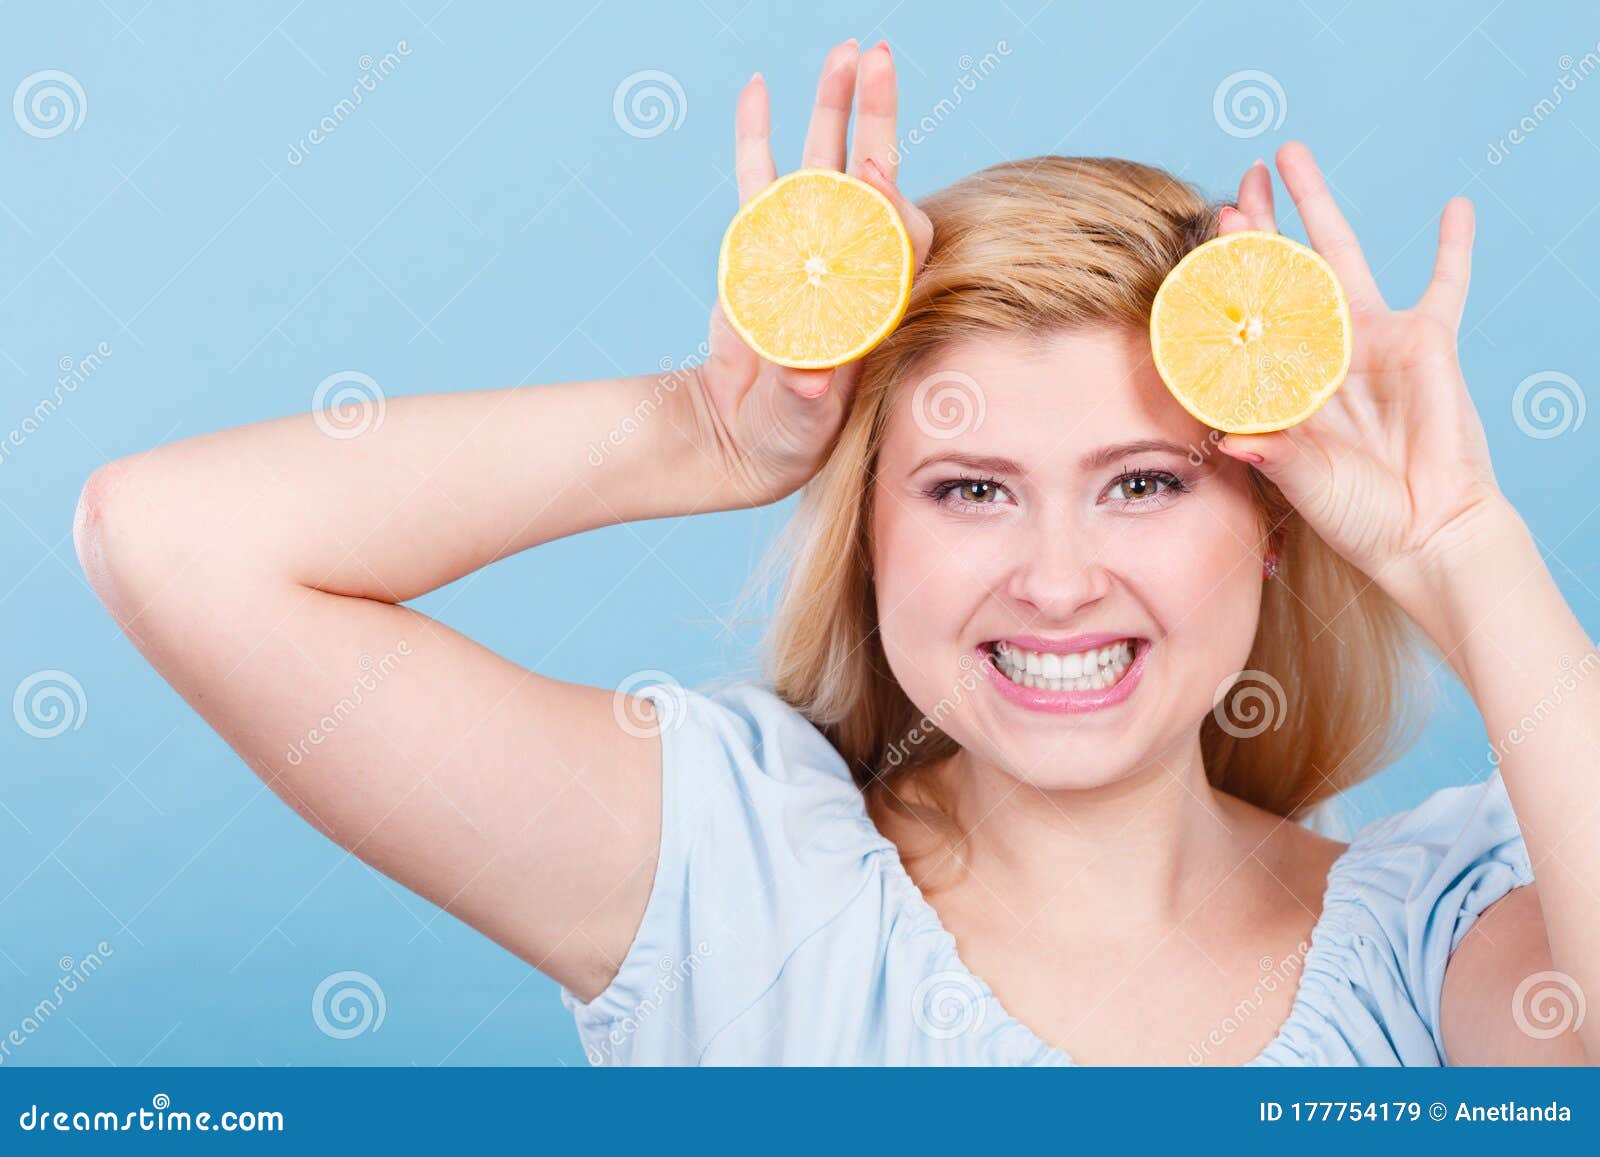 健康的饮食，富含维生素的清爽食物。张开嘴拿着酸柑橘水果柠檬伸出舌头的女人。张开嘴拿着柠檬的女人人像图片免费下载_jpg格式_2521像素_编号 ...